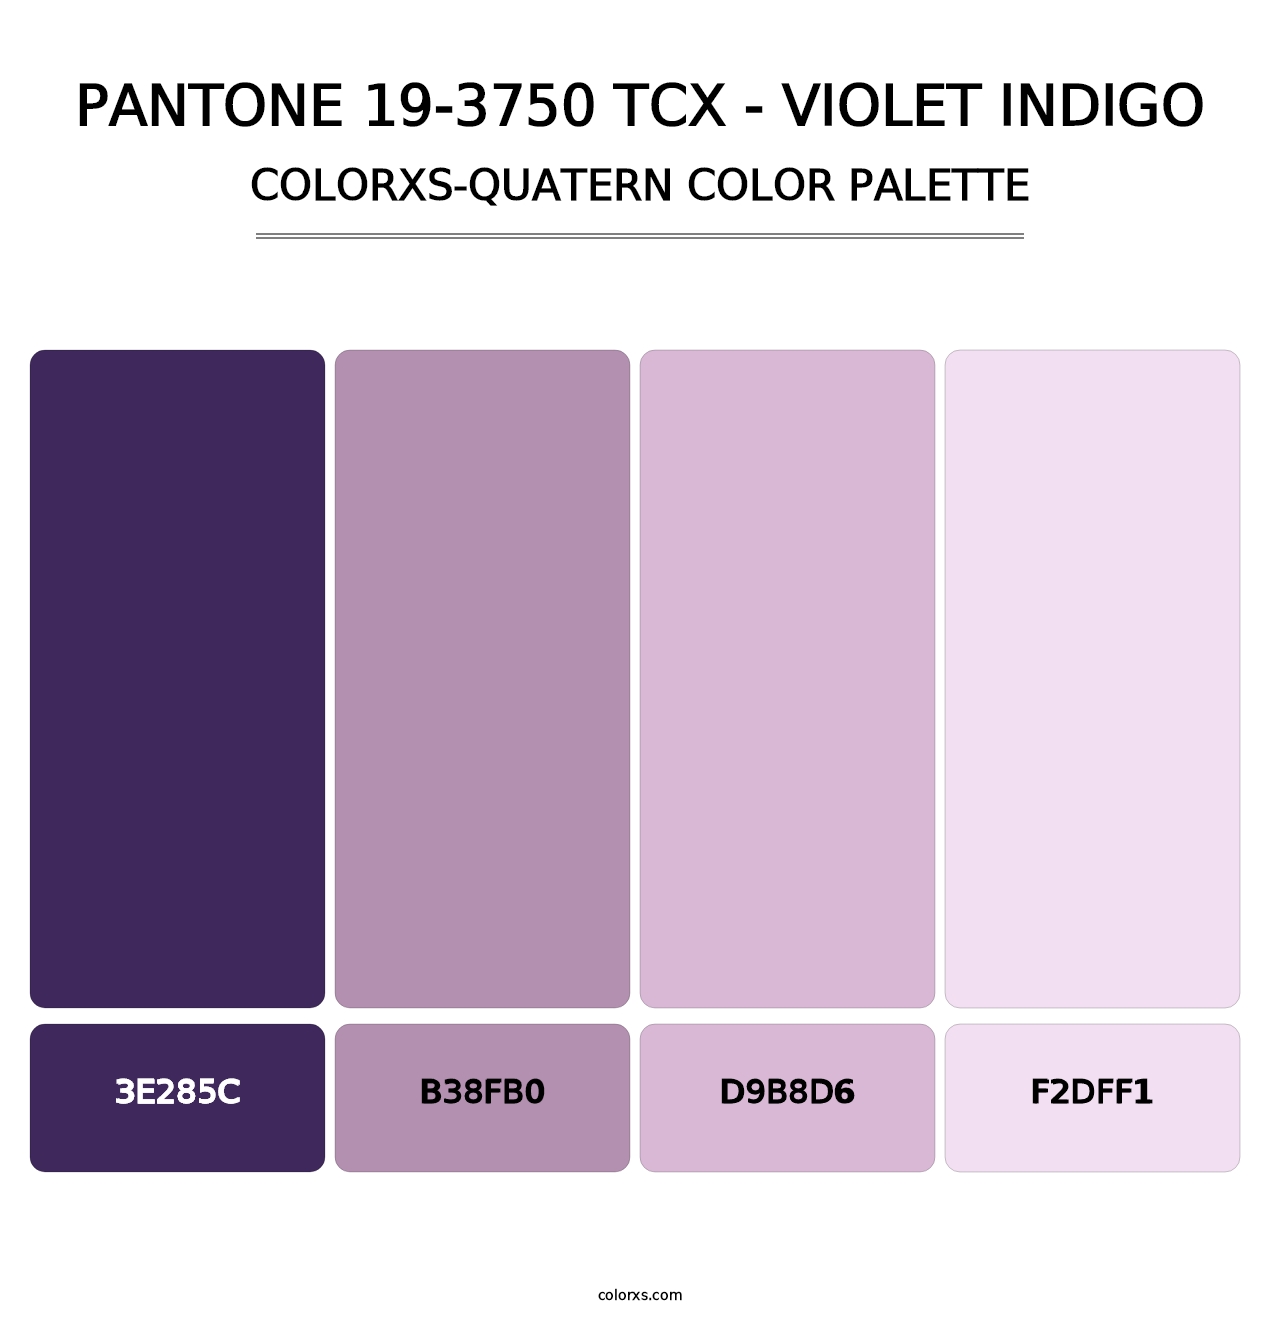 PANTONE 19-3750 TCX - Violet Indigo - Colorxs Quatern Palette